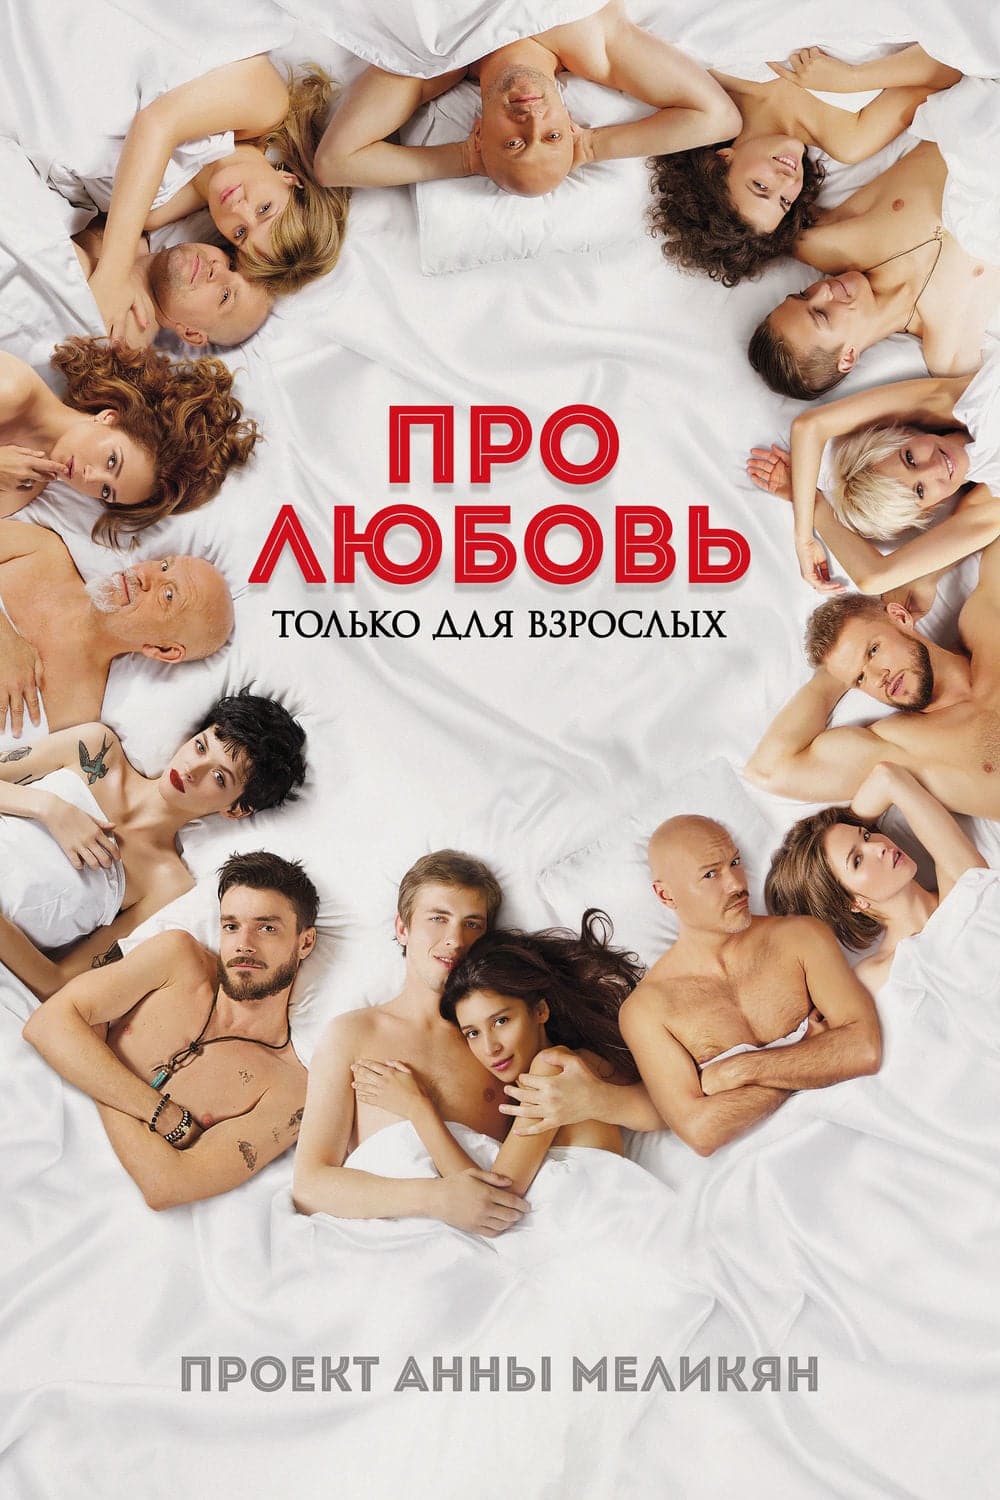 Plakat von "About Love 2"